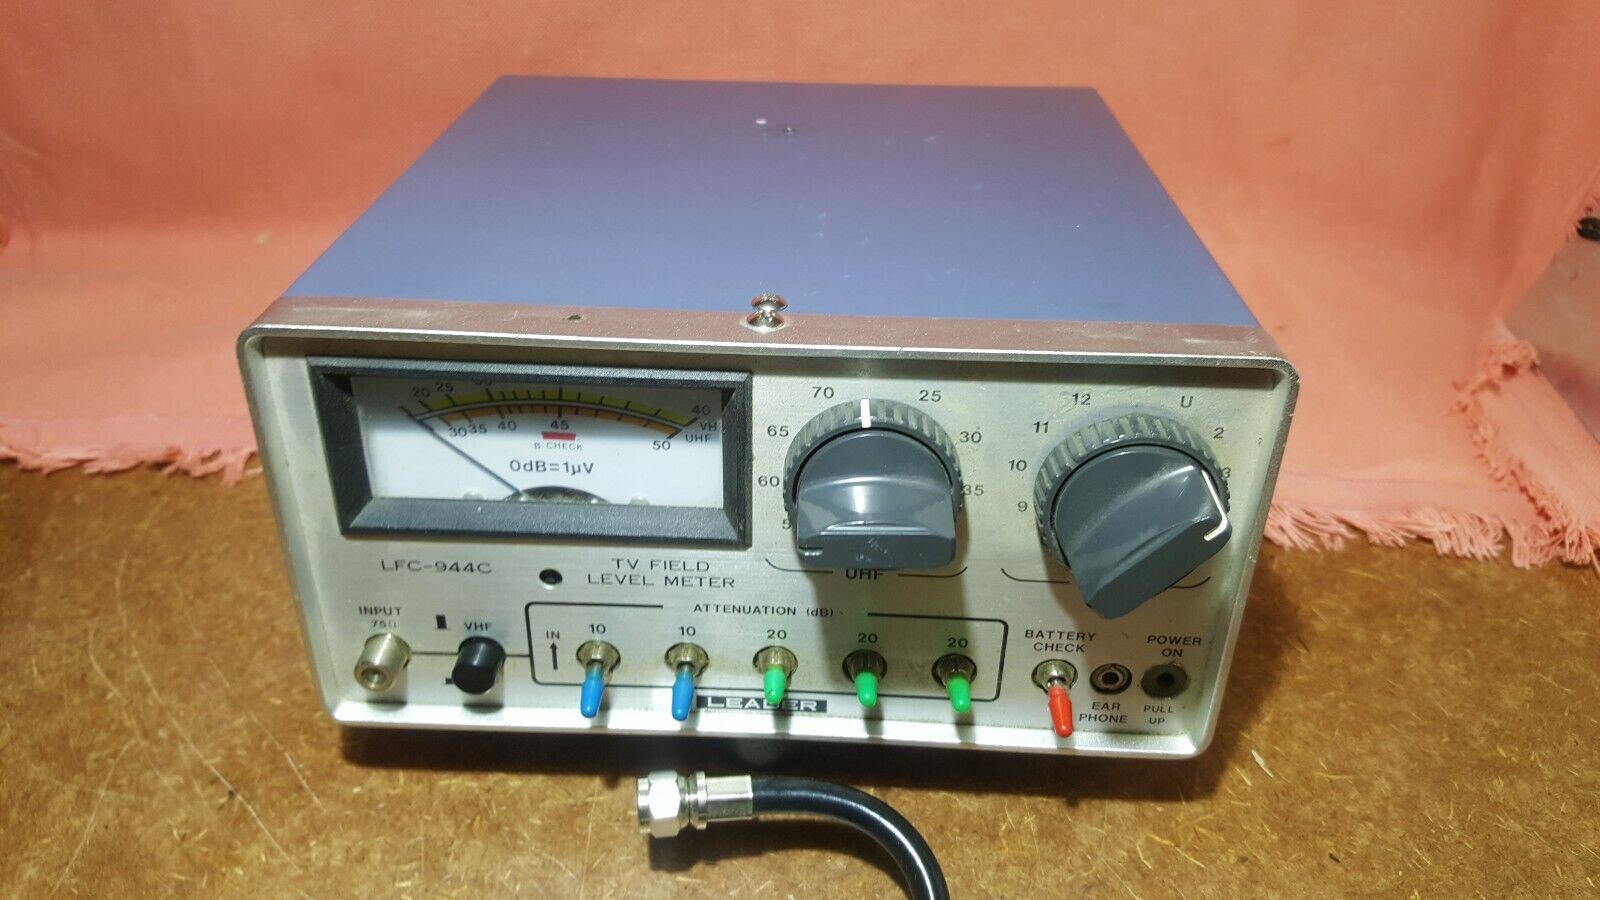 Lider LFC-944C Urządzenie pomiarowe i testujące Vintage Wysoko oceniany